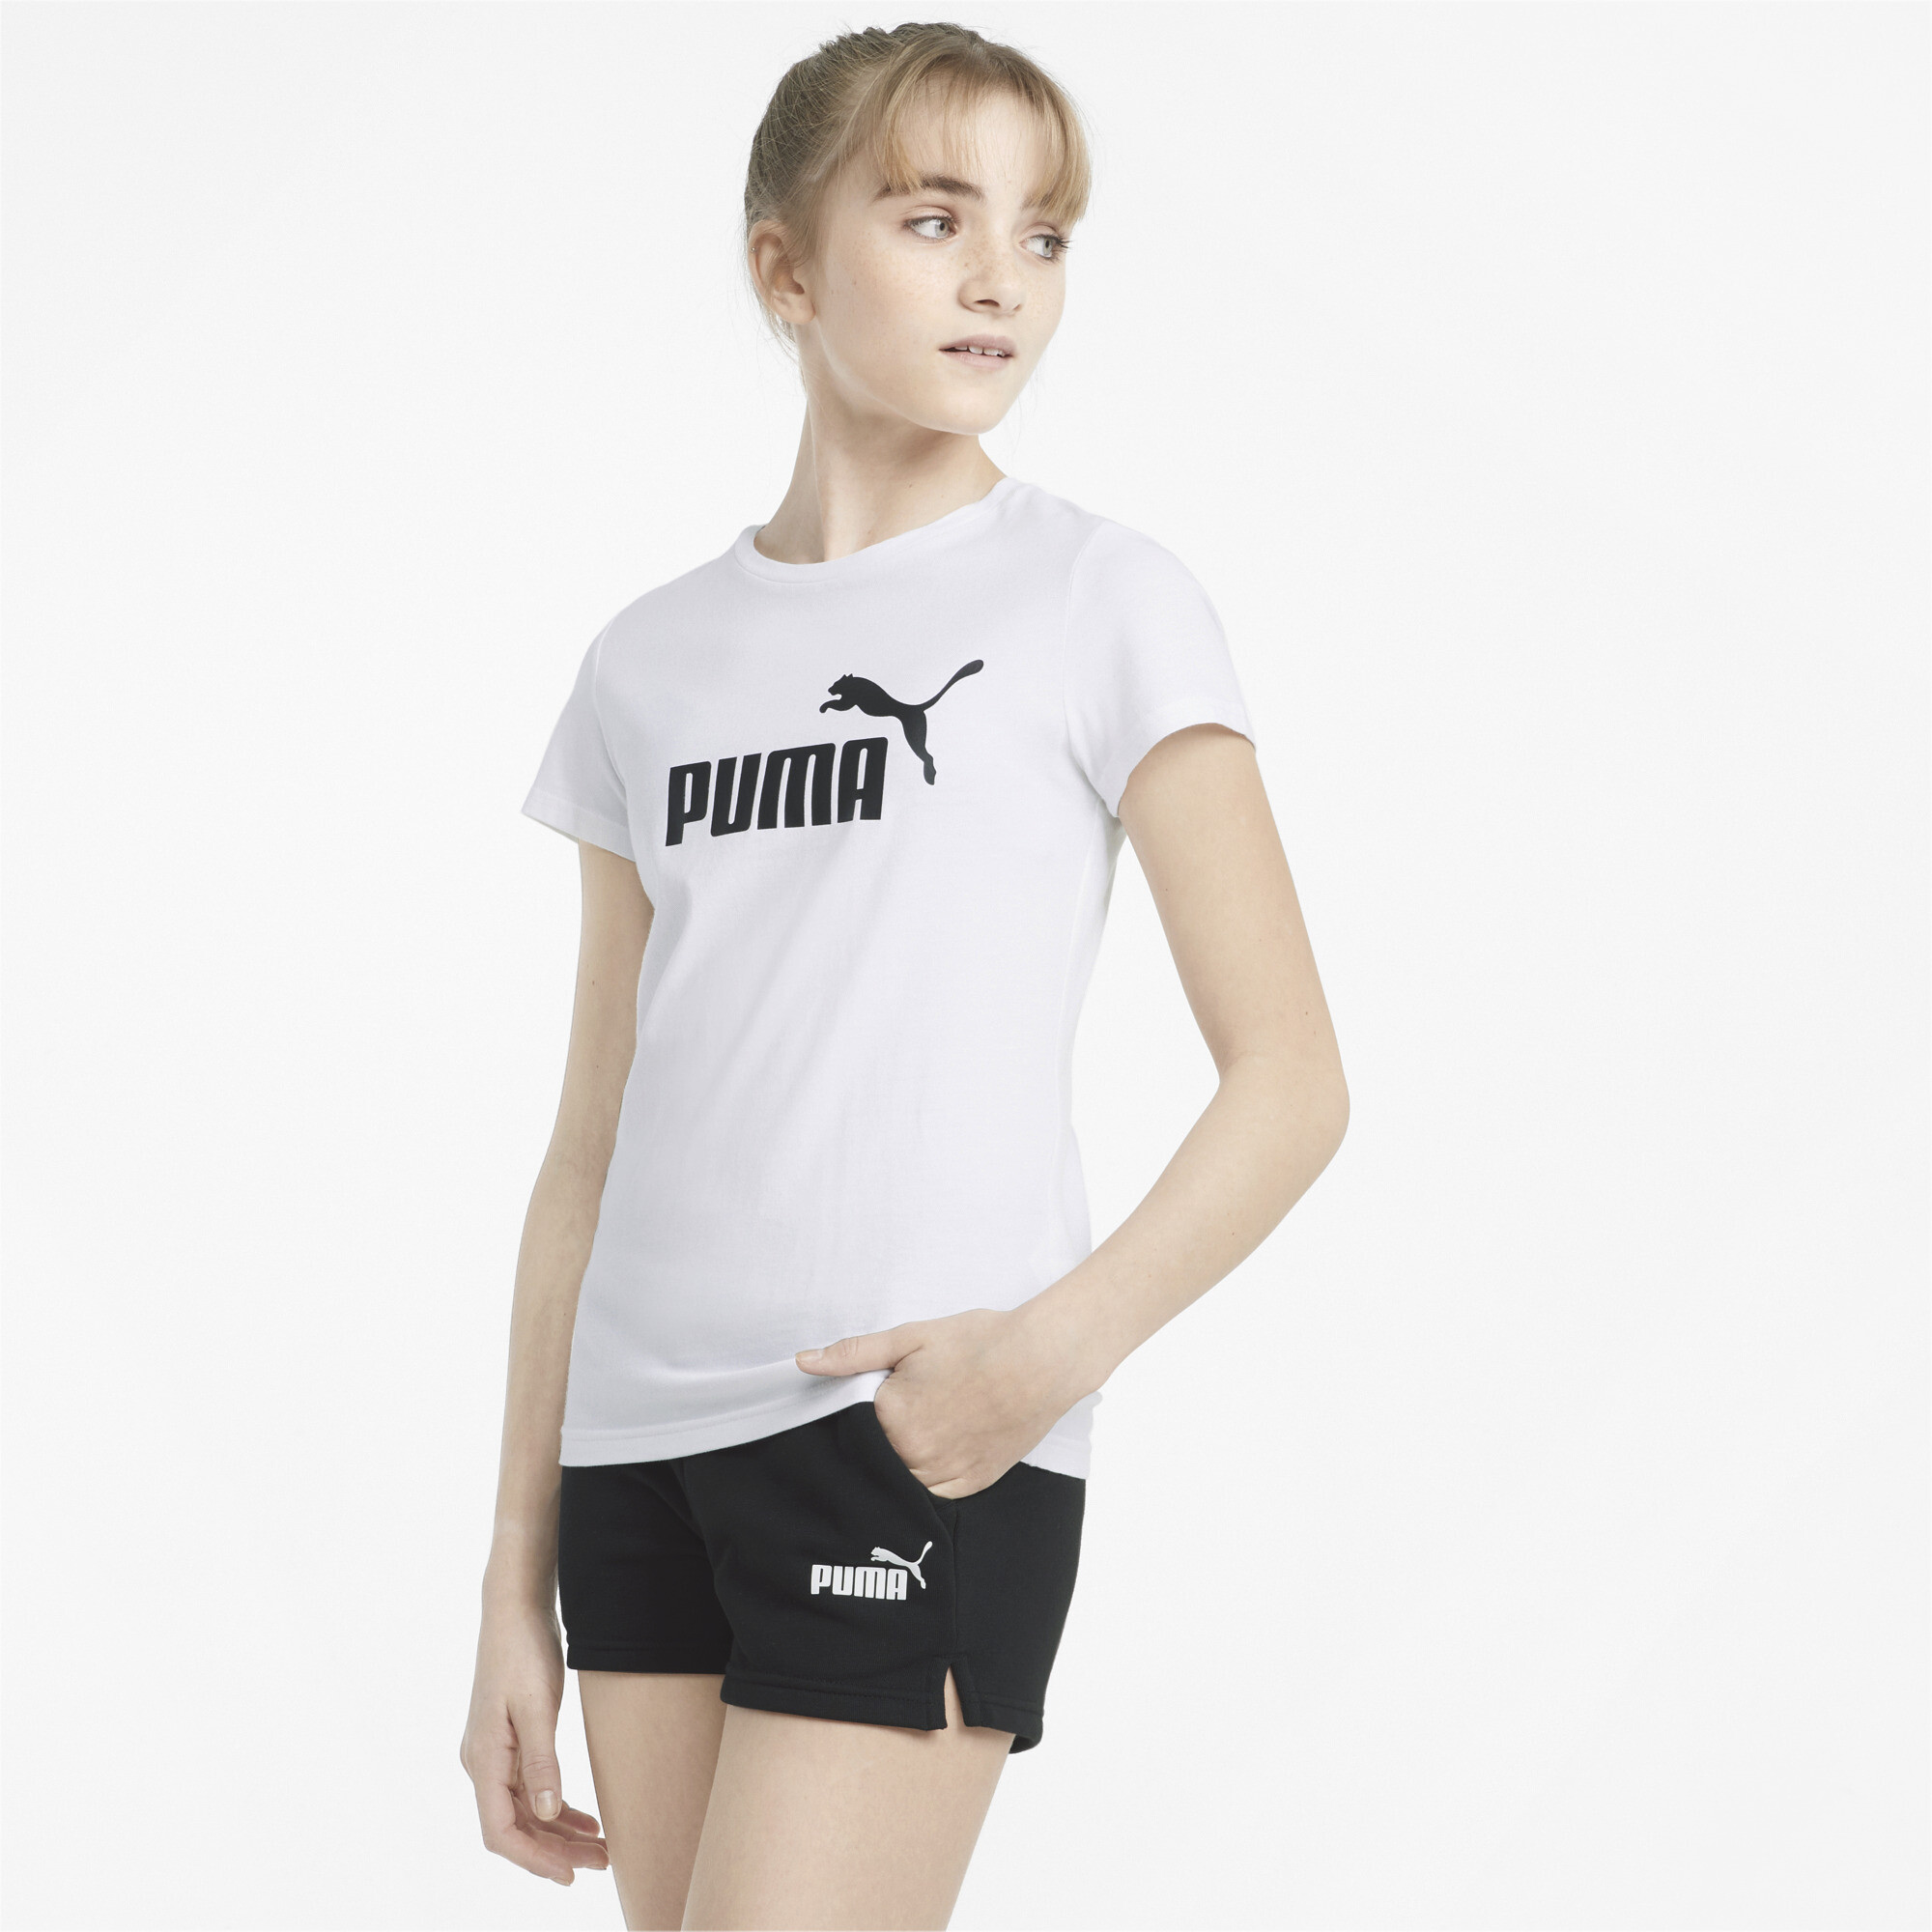 Women's Puma Logo Tee And Shorts Youth Set, White, Size 11-12Y, Clothing